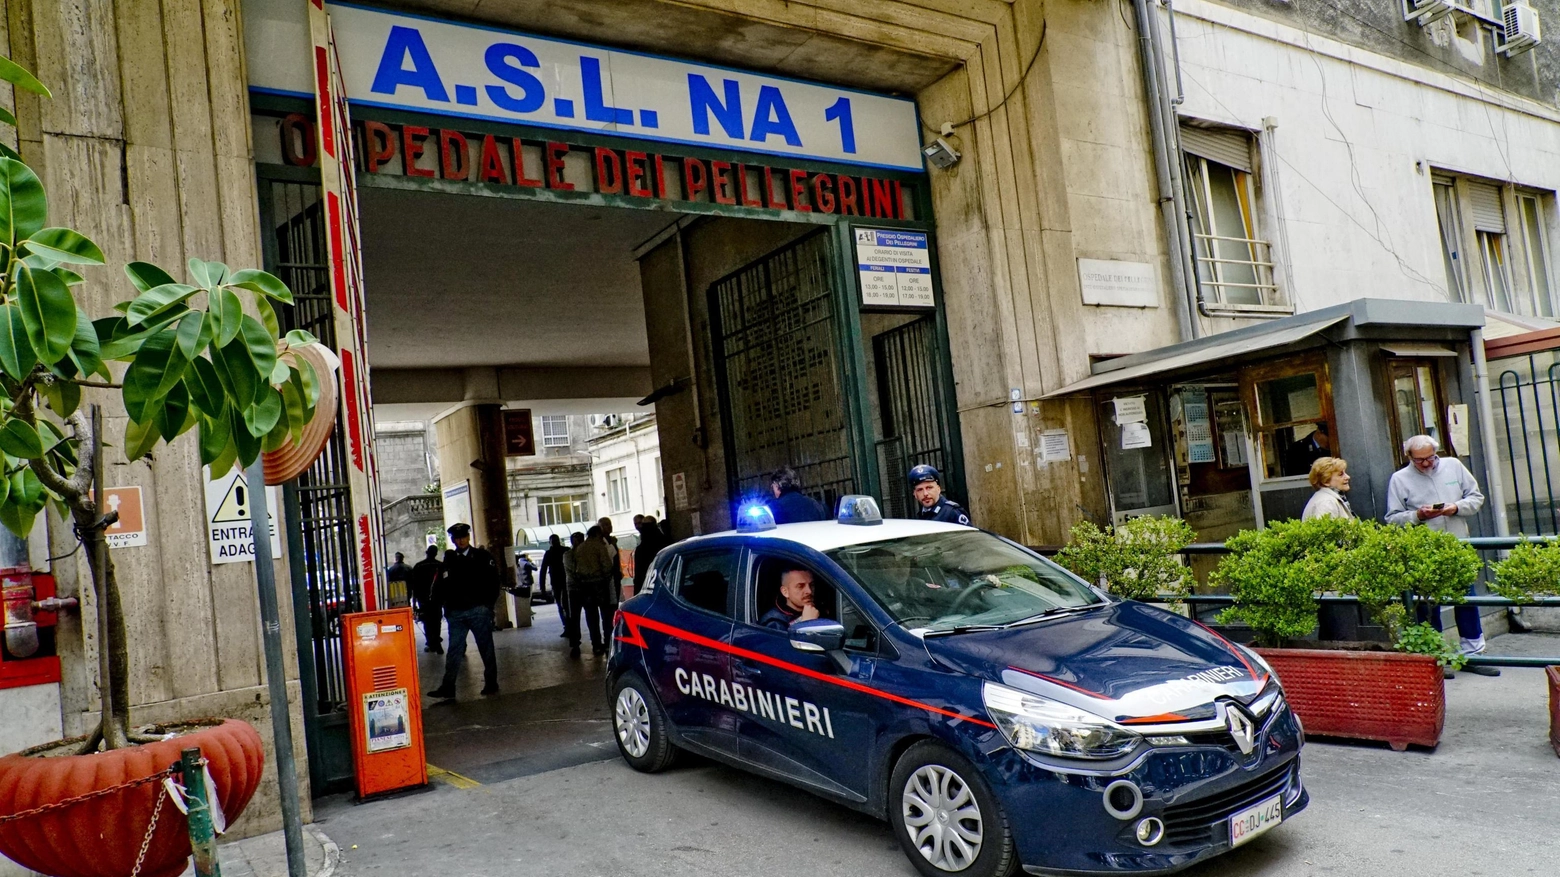 L'ospedale Vecchio Pellegrini di Napoli dove sono state ricoverate le persone intossicate (Ansa)